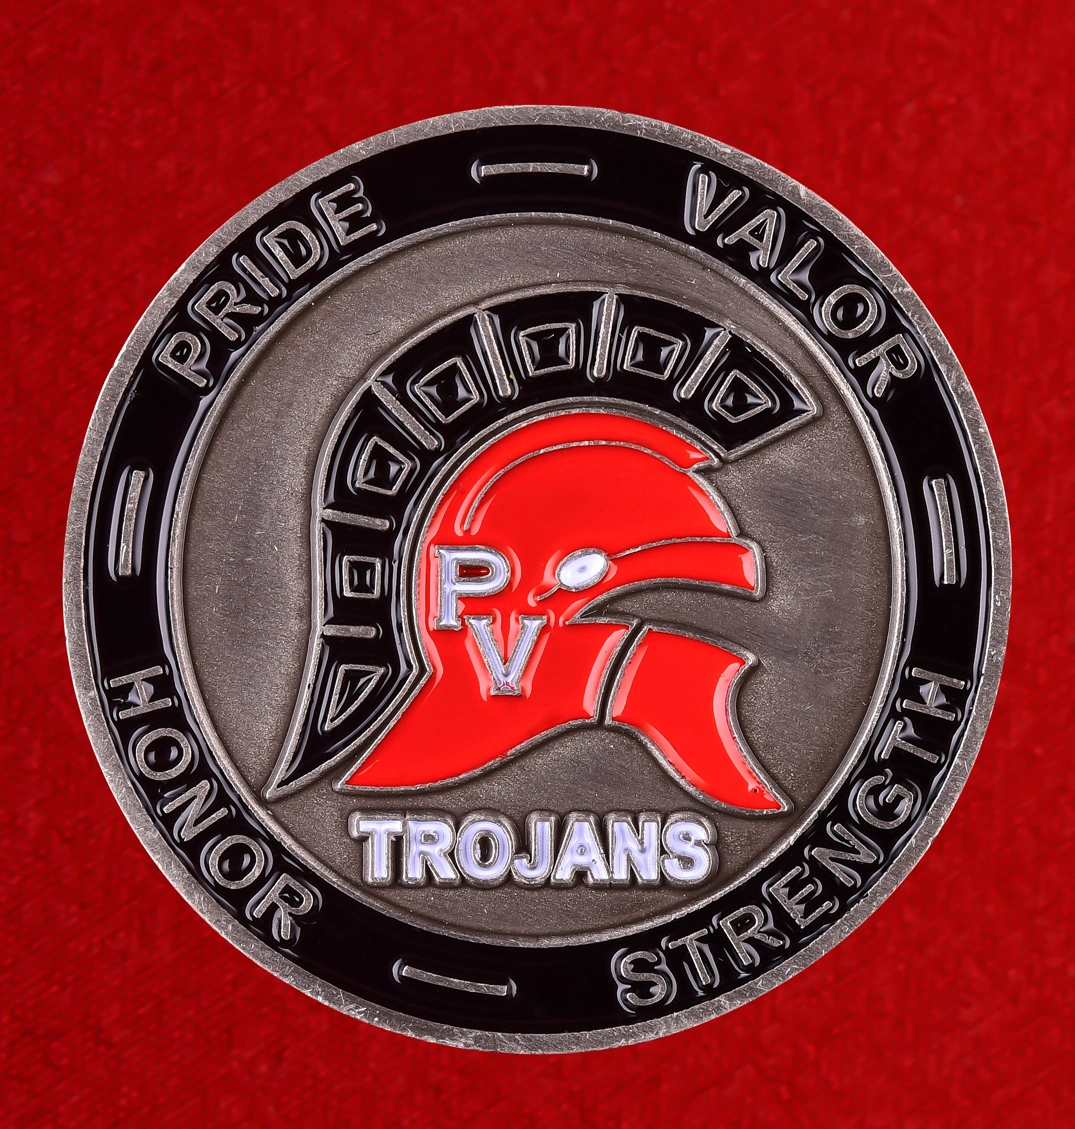 Эмблема старшей школы США "Trojans", Аризона